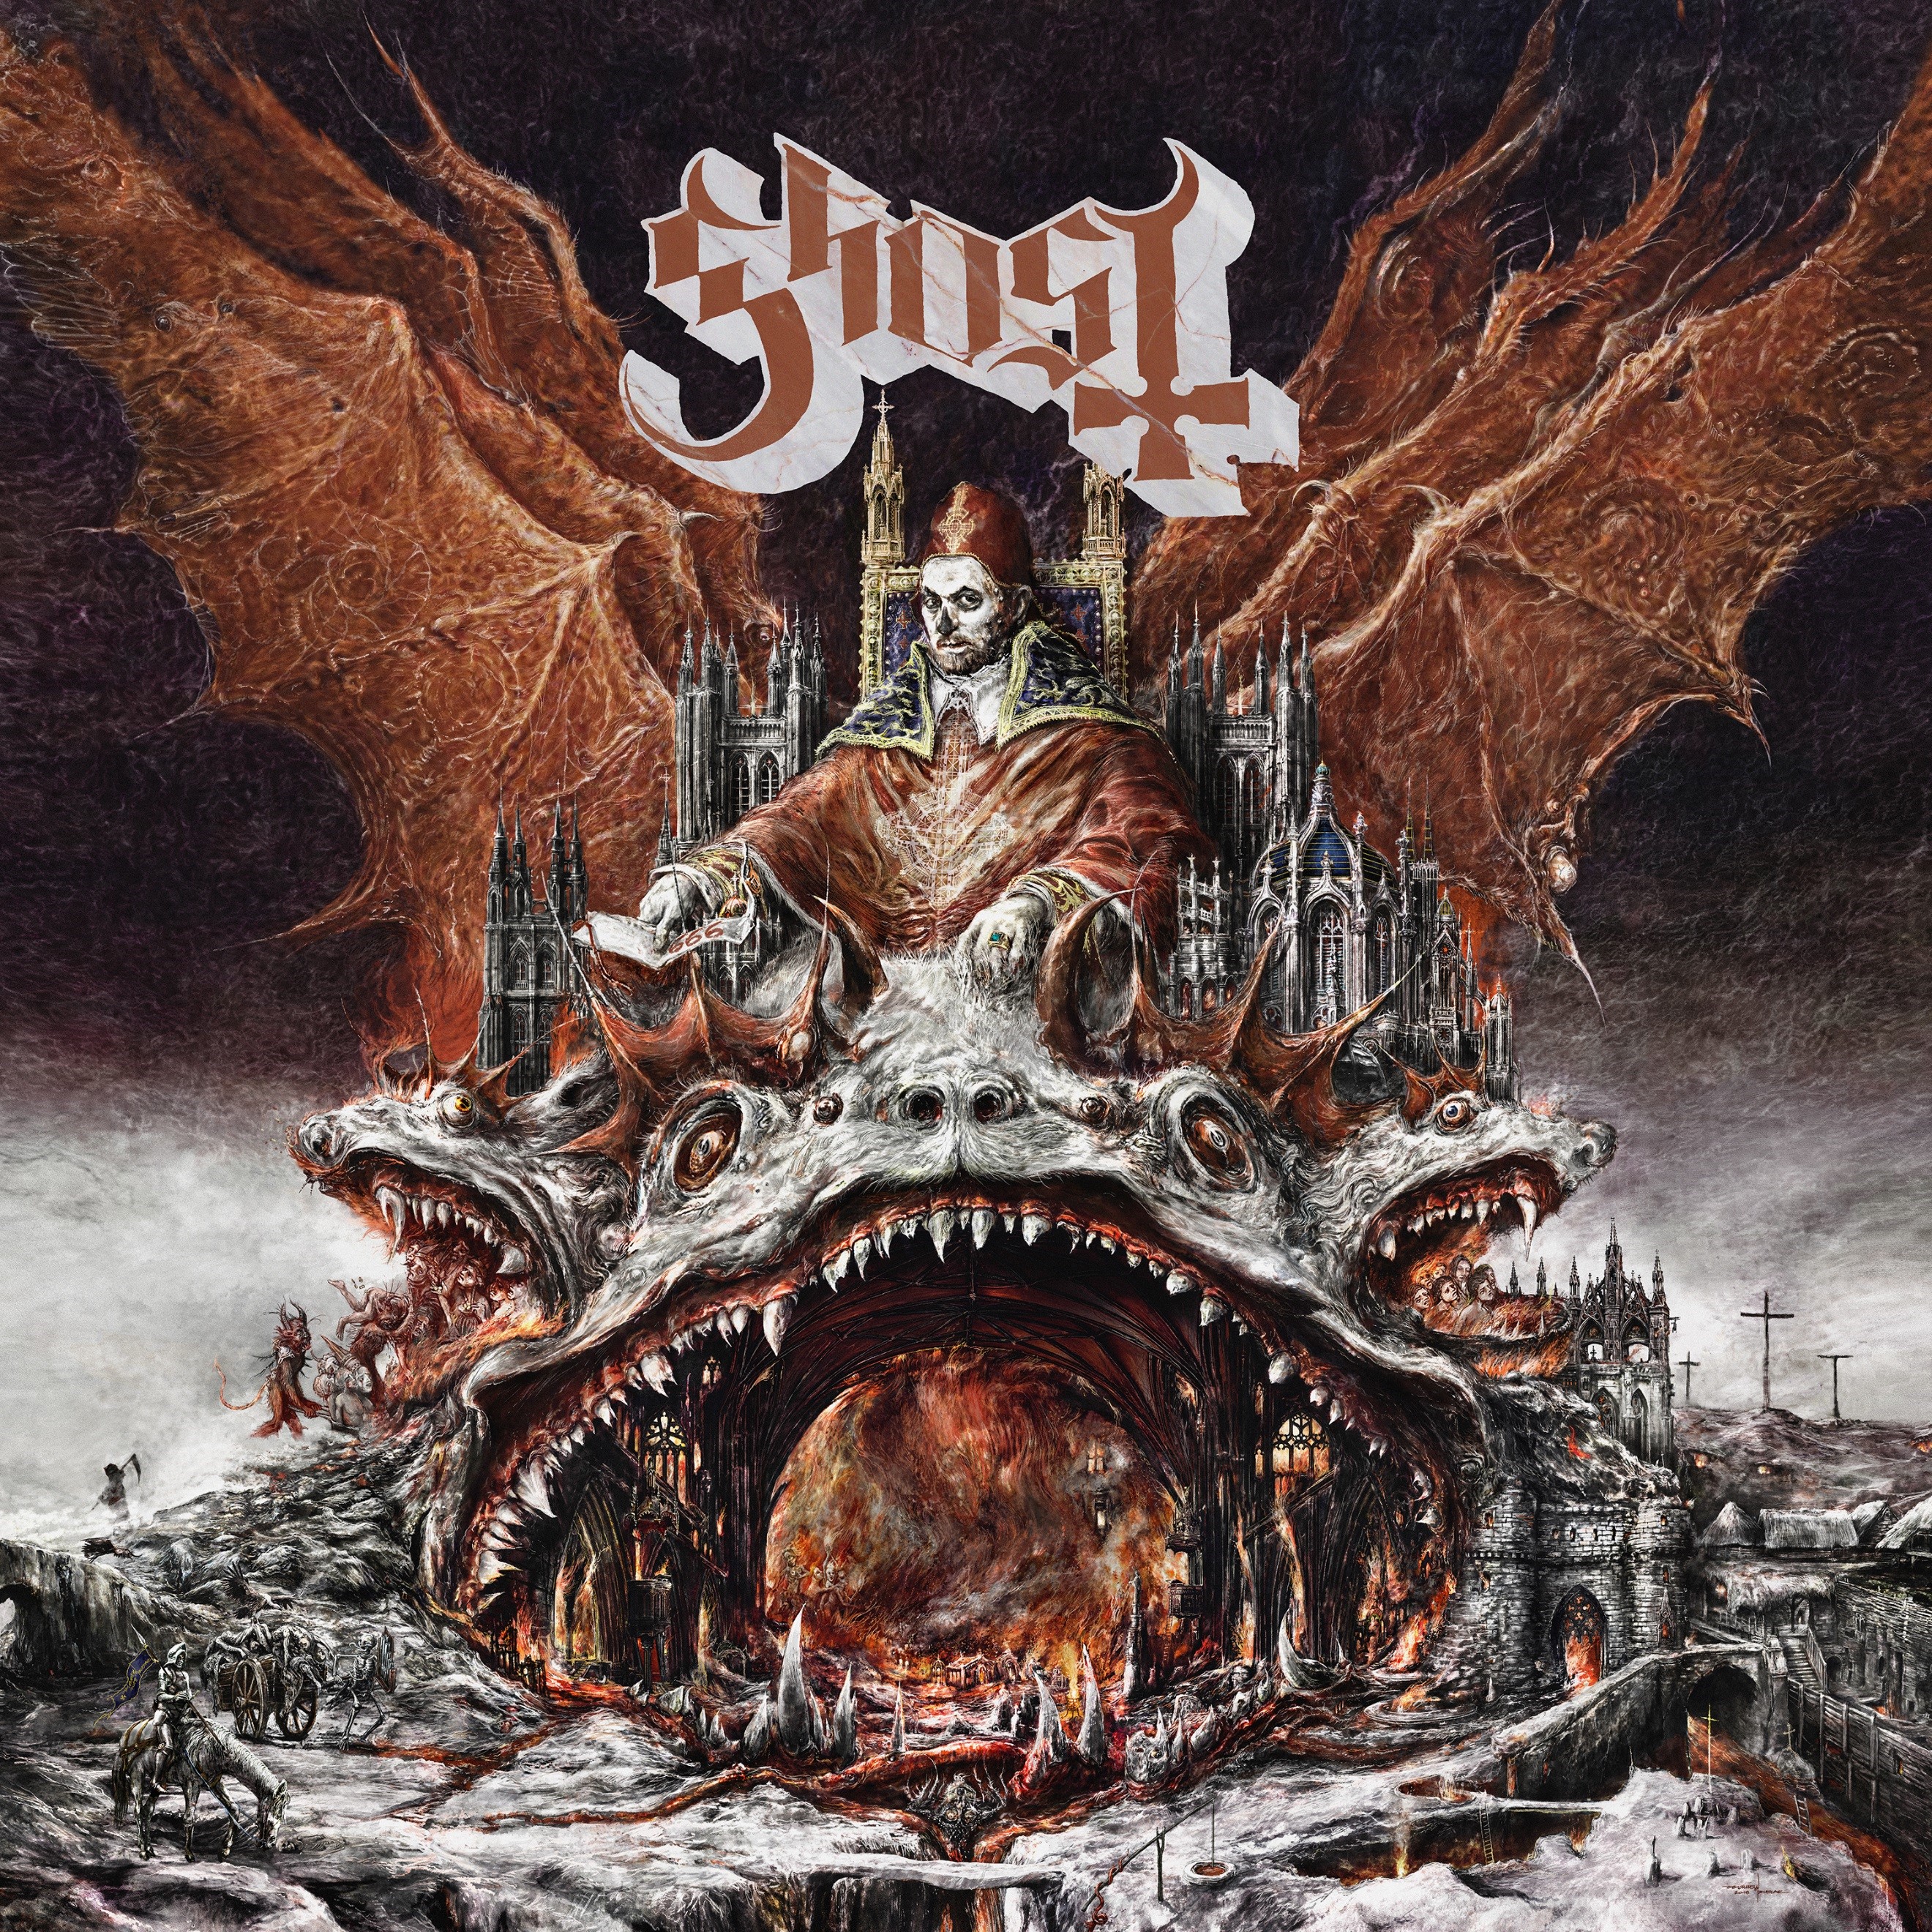 Ghost zapowiada swój czwarty album Prequelle i prezentuje singiel Rats!